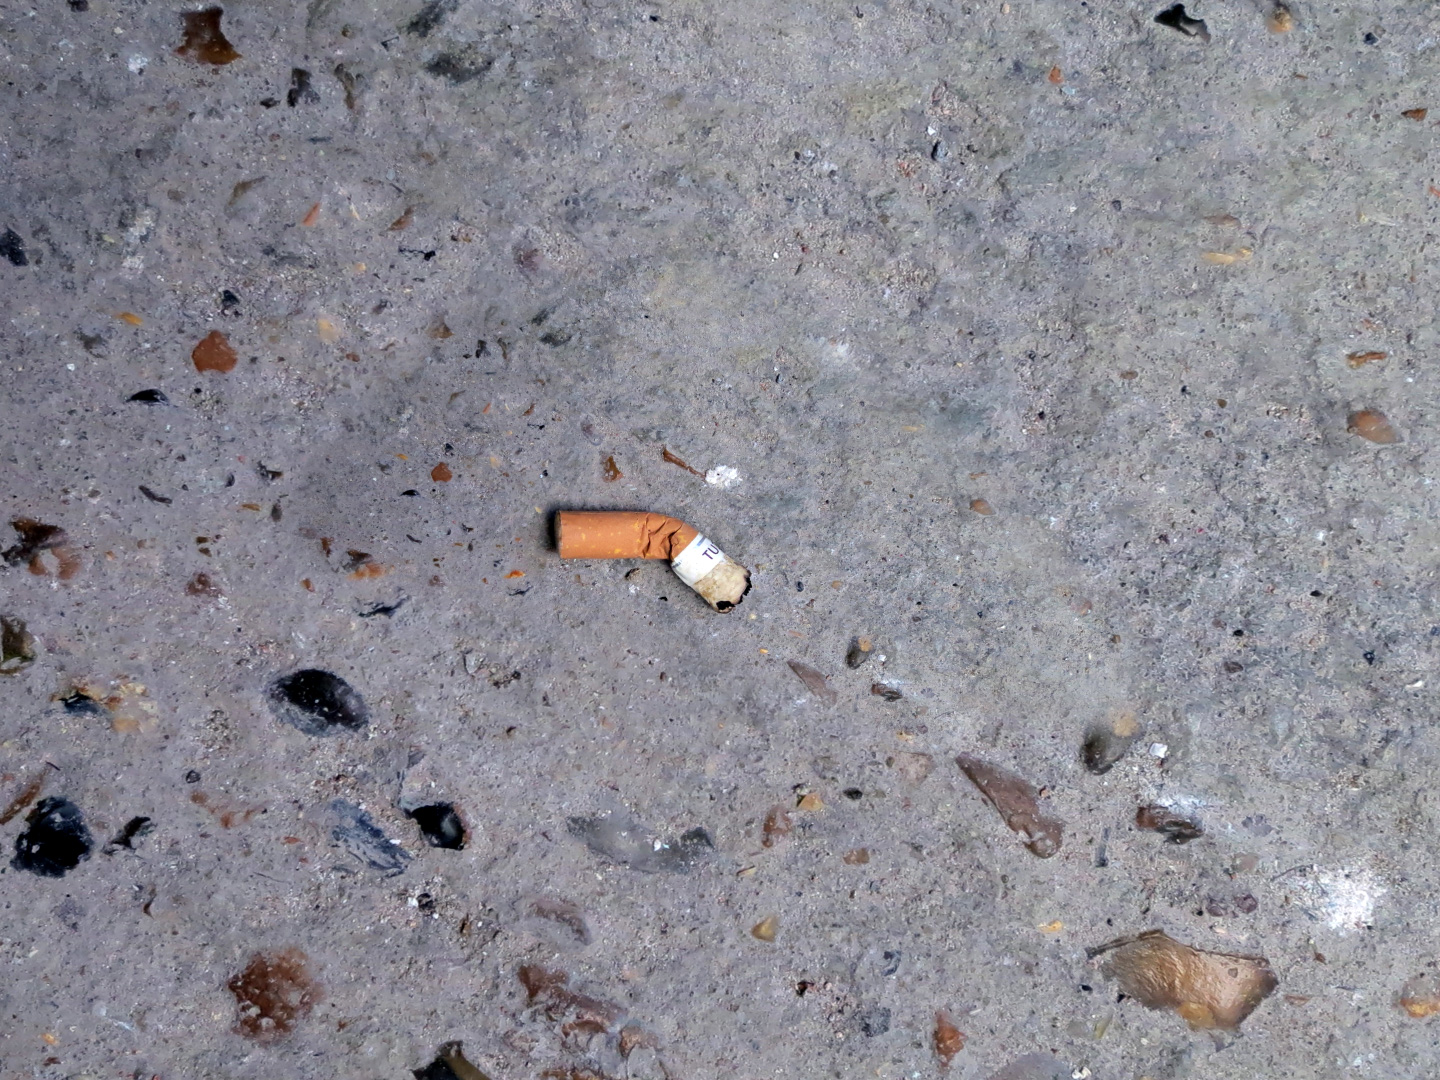 Cigarettes.